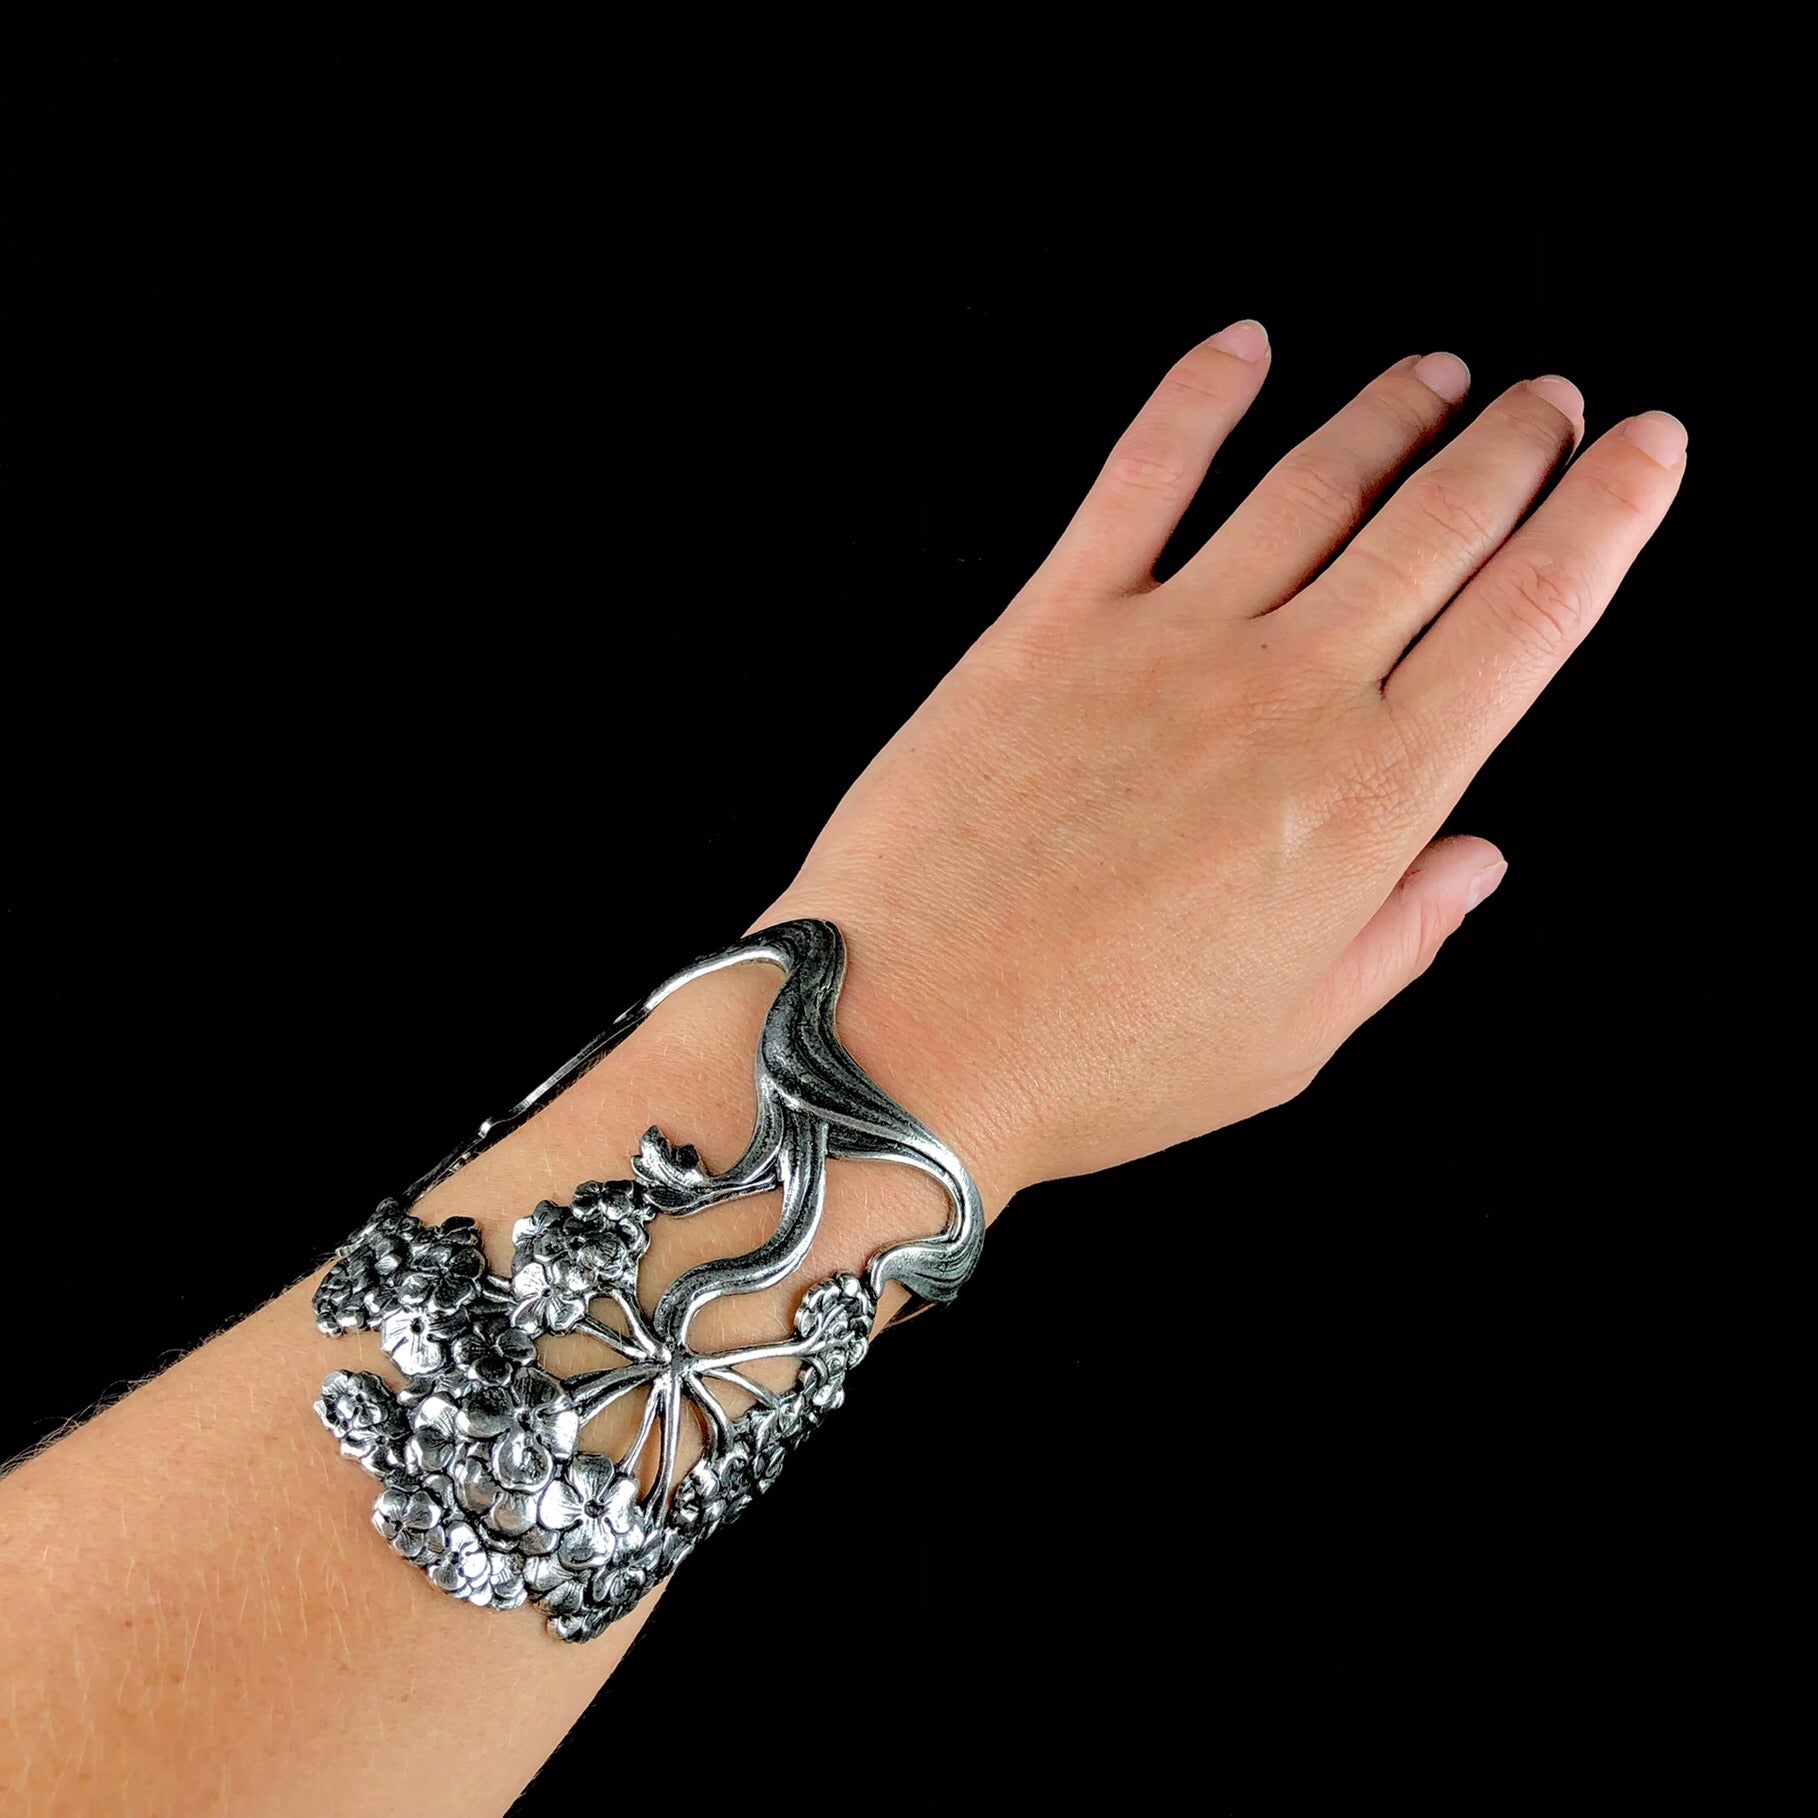 Silver Wisteria Cuff shown on wrist